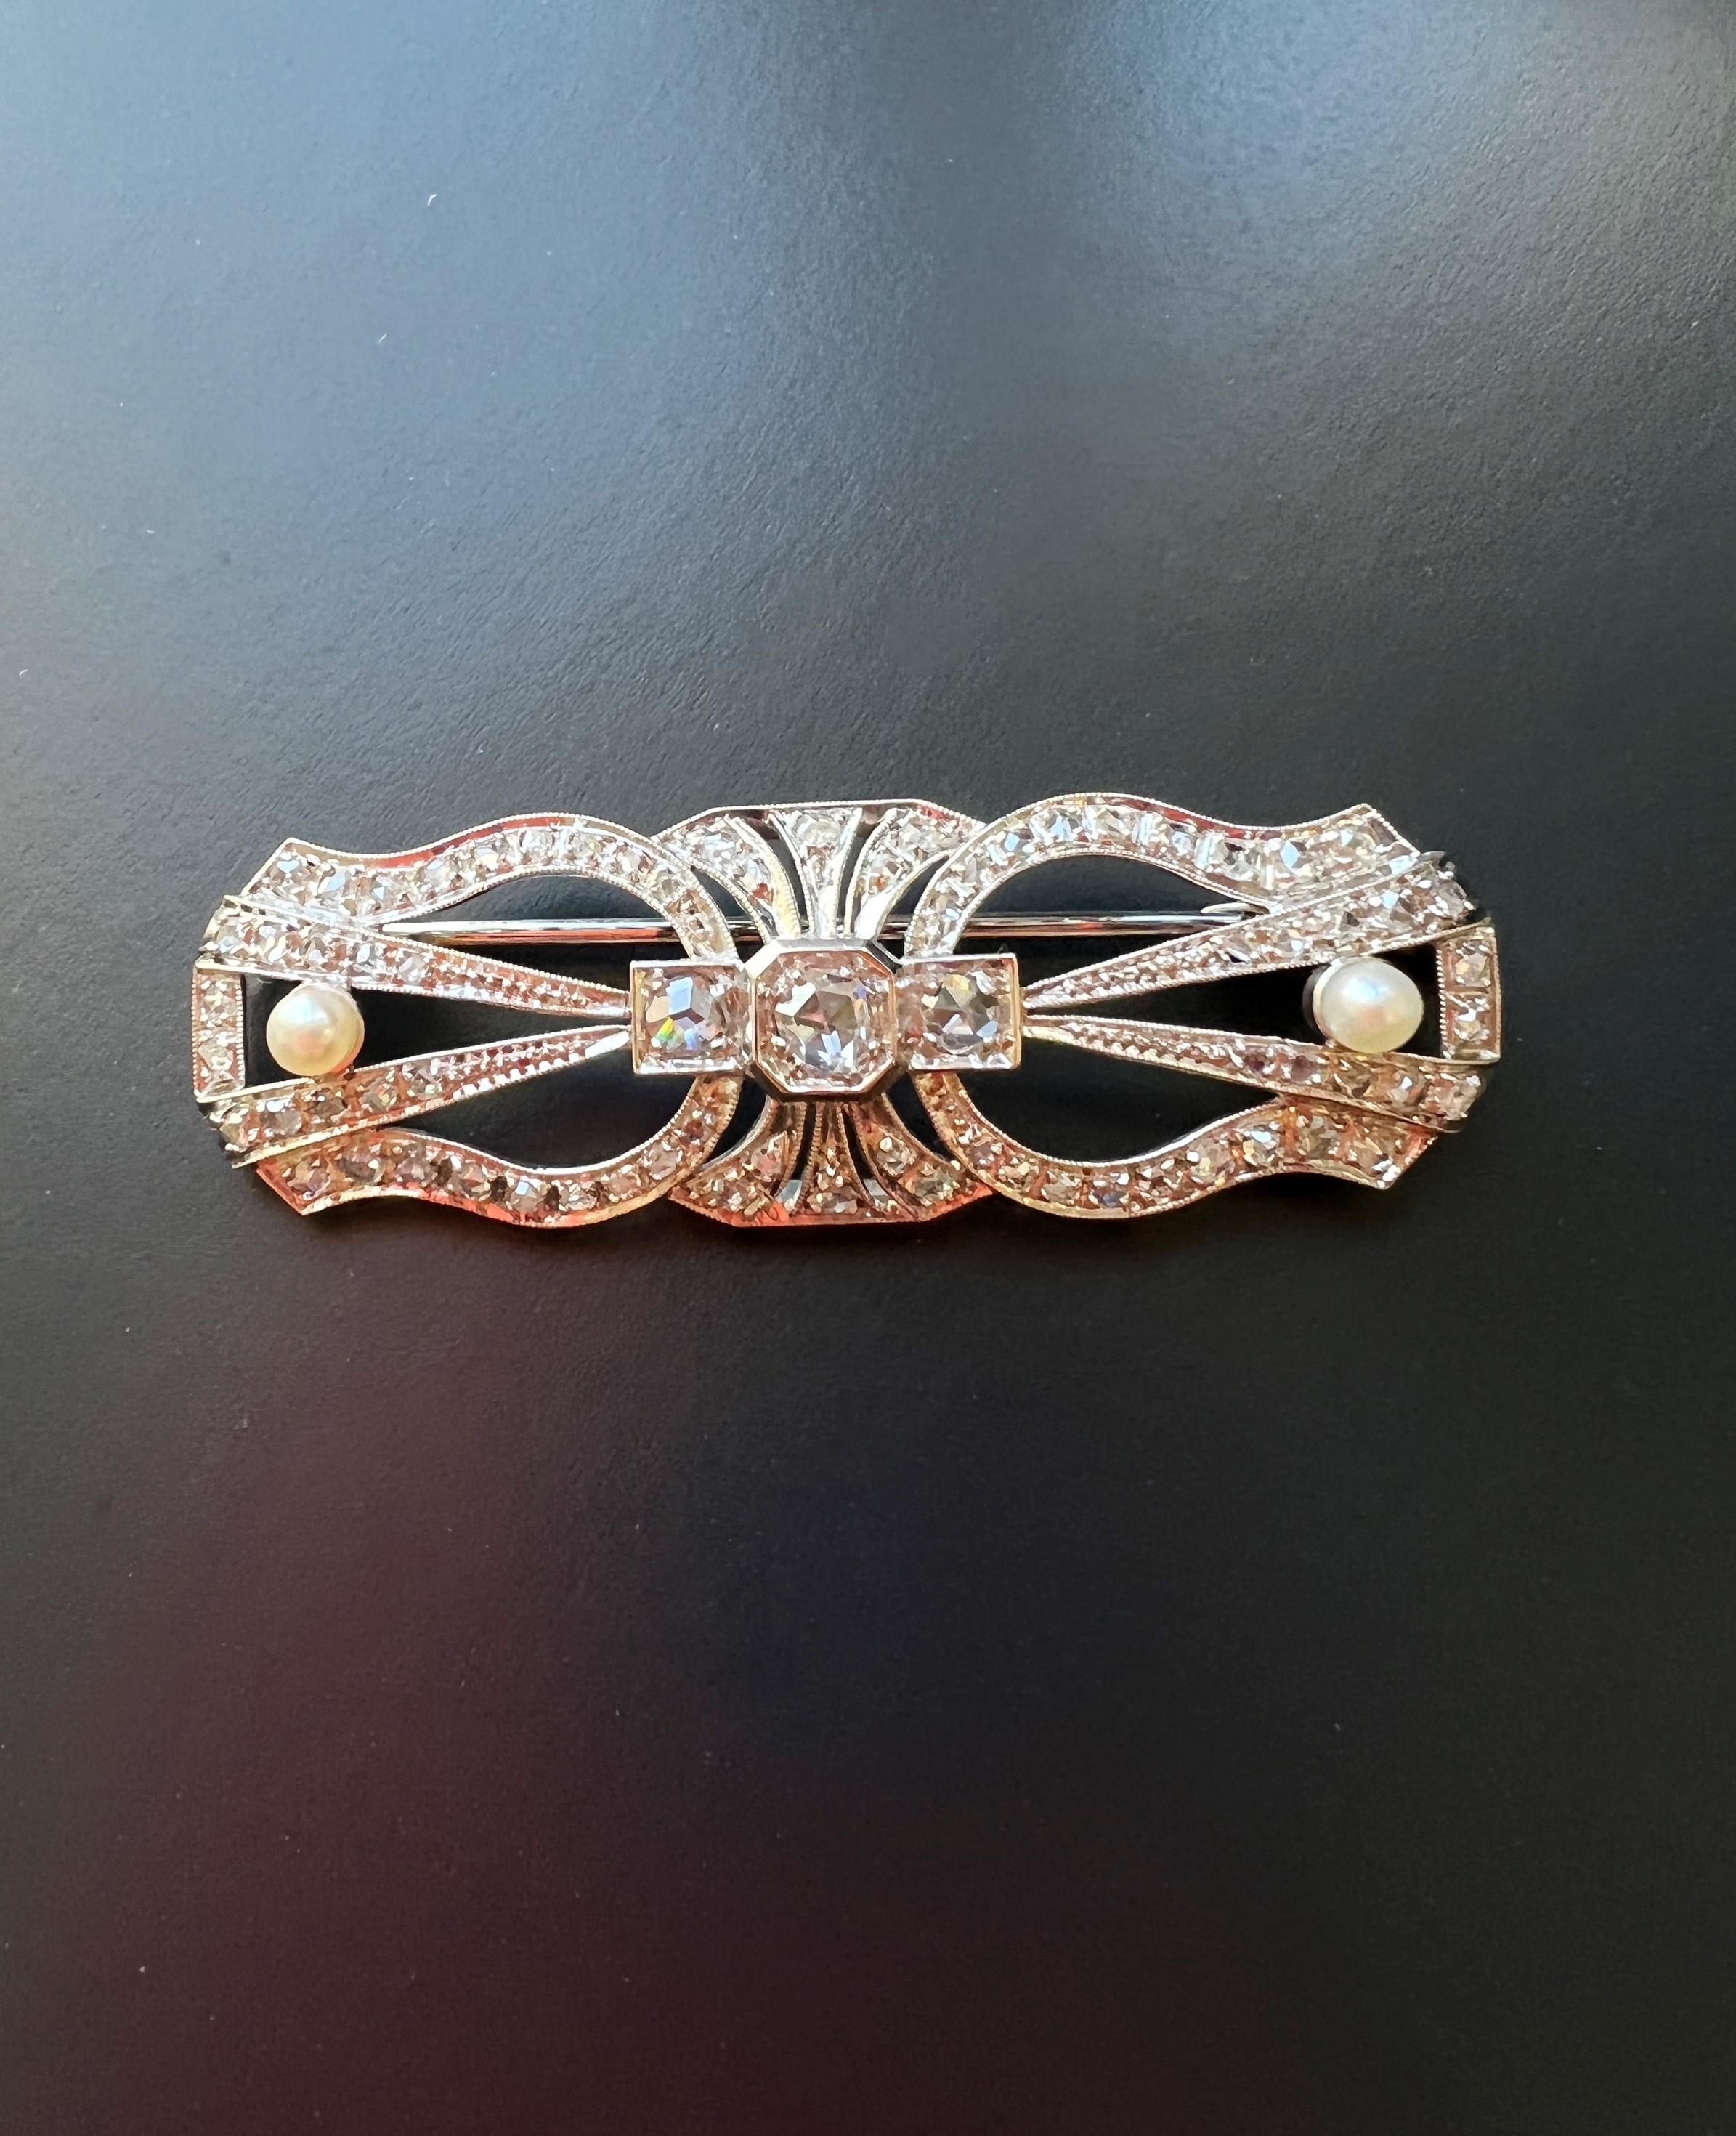 Géométrique, élégante et très étincelante, voici en vente une superbe broche vintage française de l'époque Art Déco. La broche est entièrement pavée de 73 diamants en taille rose, dont 3 importants au centre. Les diamants sont montés en platine et